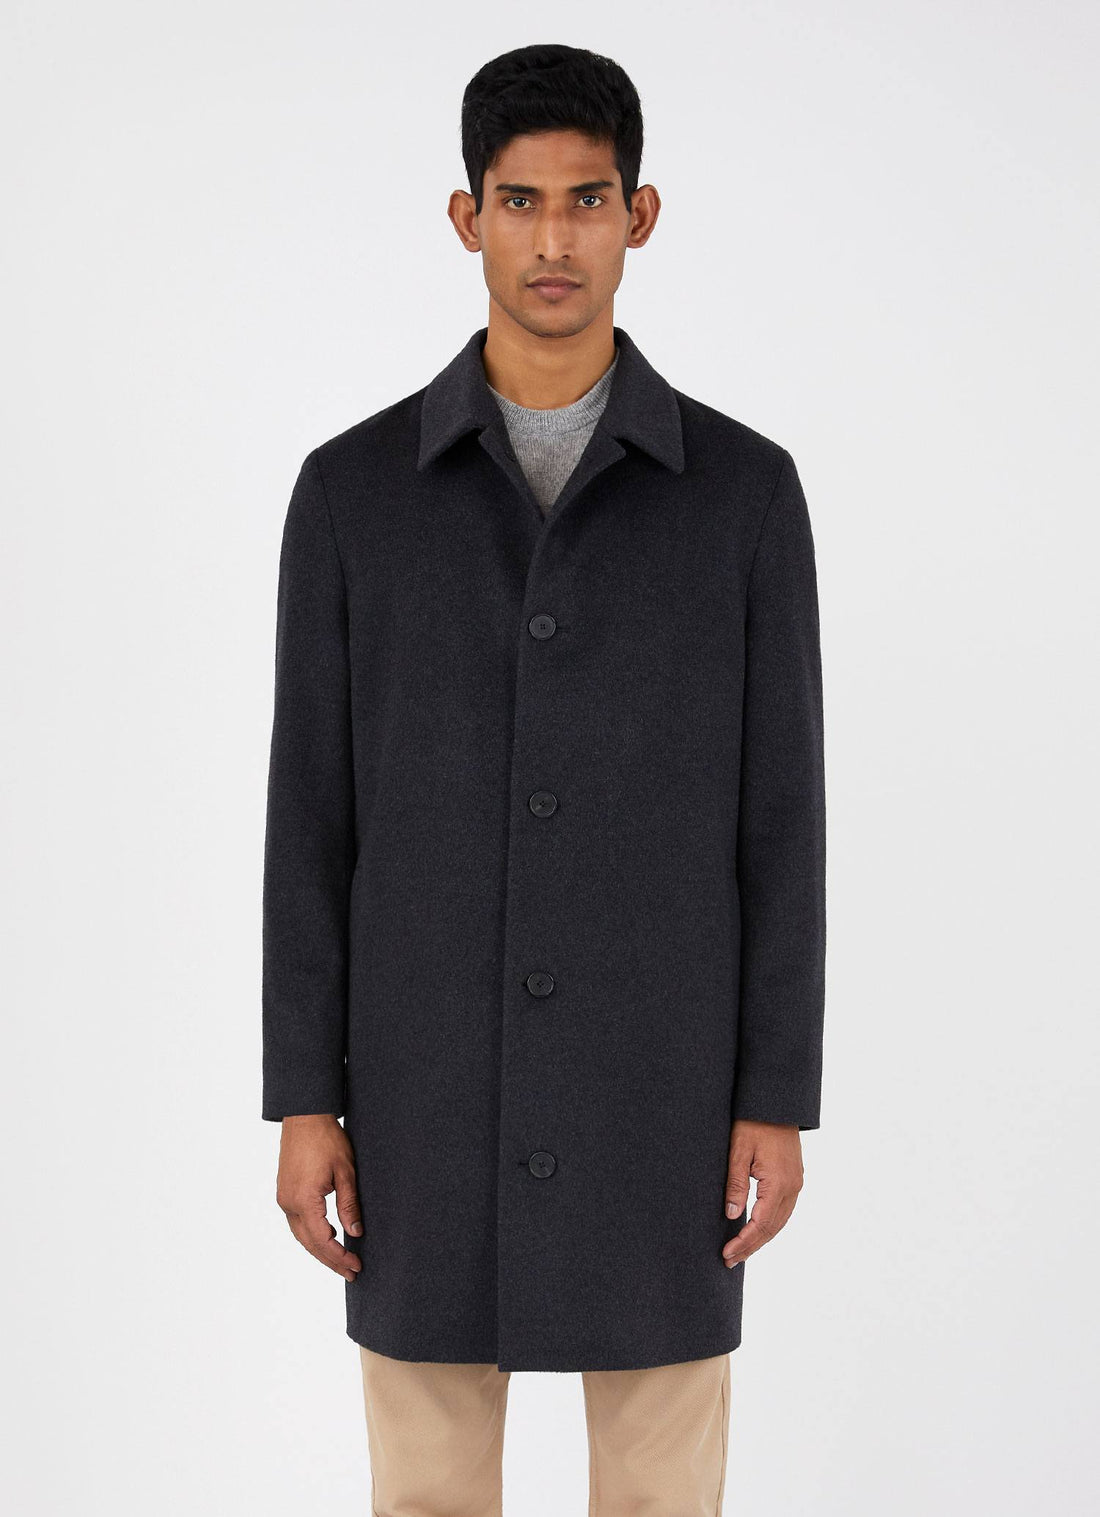 Men's Cashmere Coat in Charcoal Melange